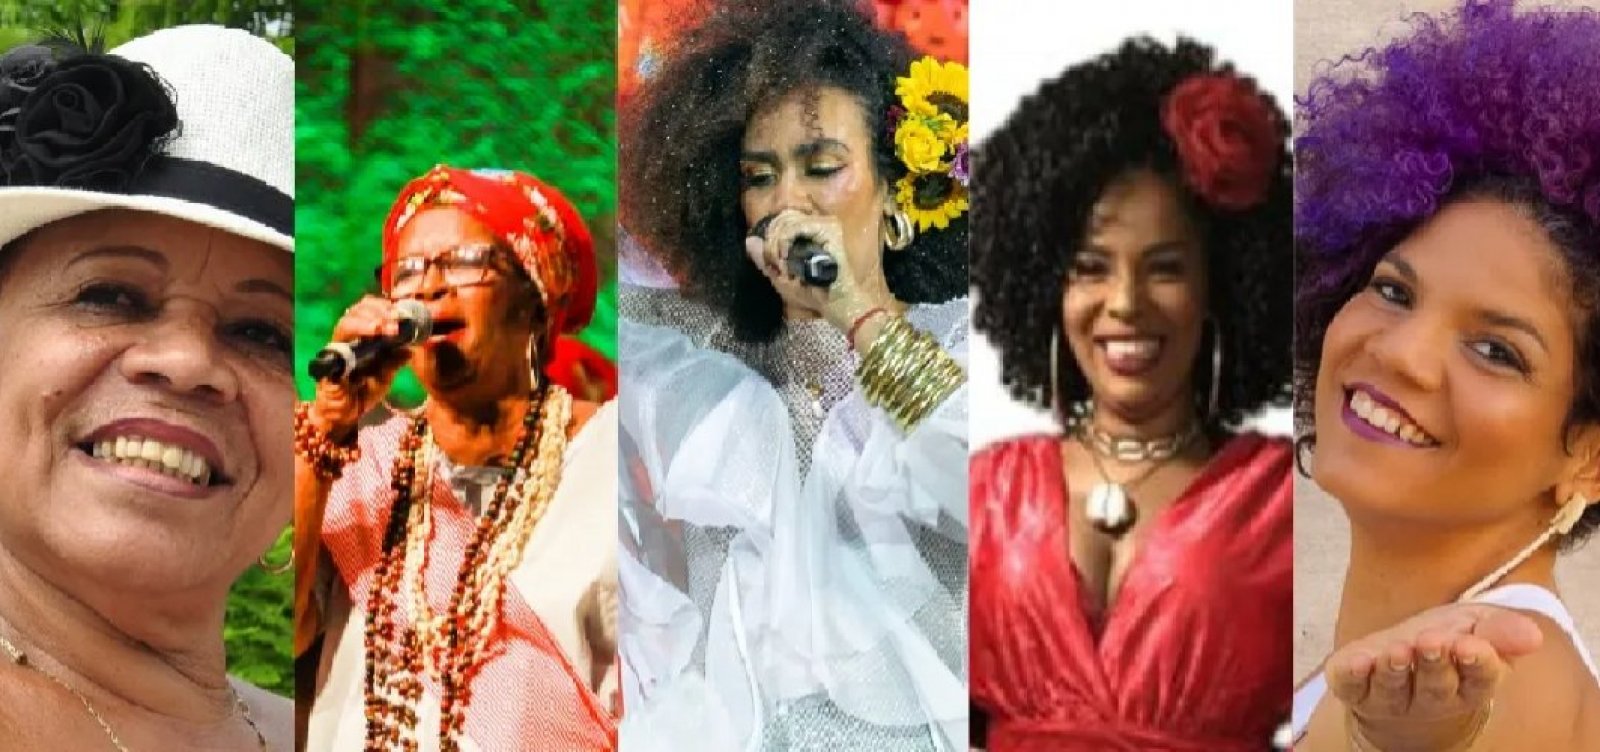 Festival Elas à Frente no Samba homenageia Tia Ciata e o Dia Internacional da Mulher